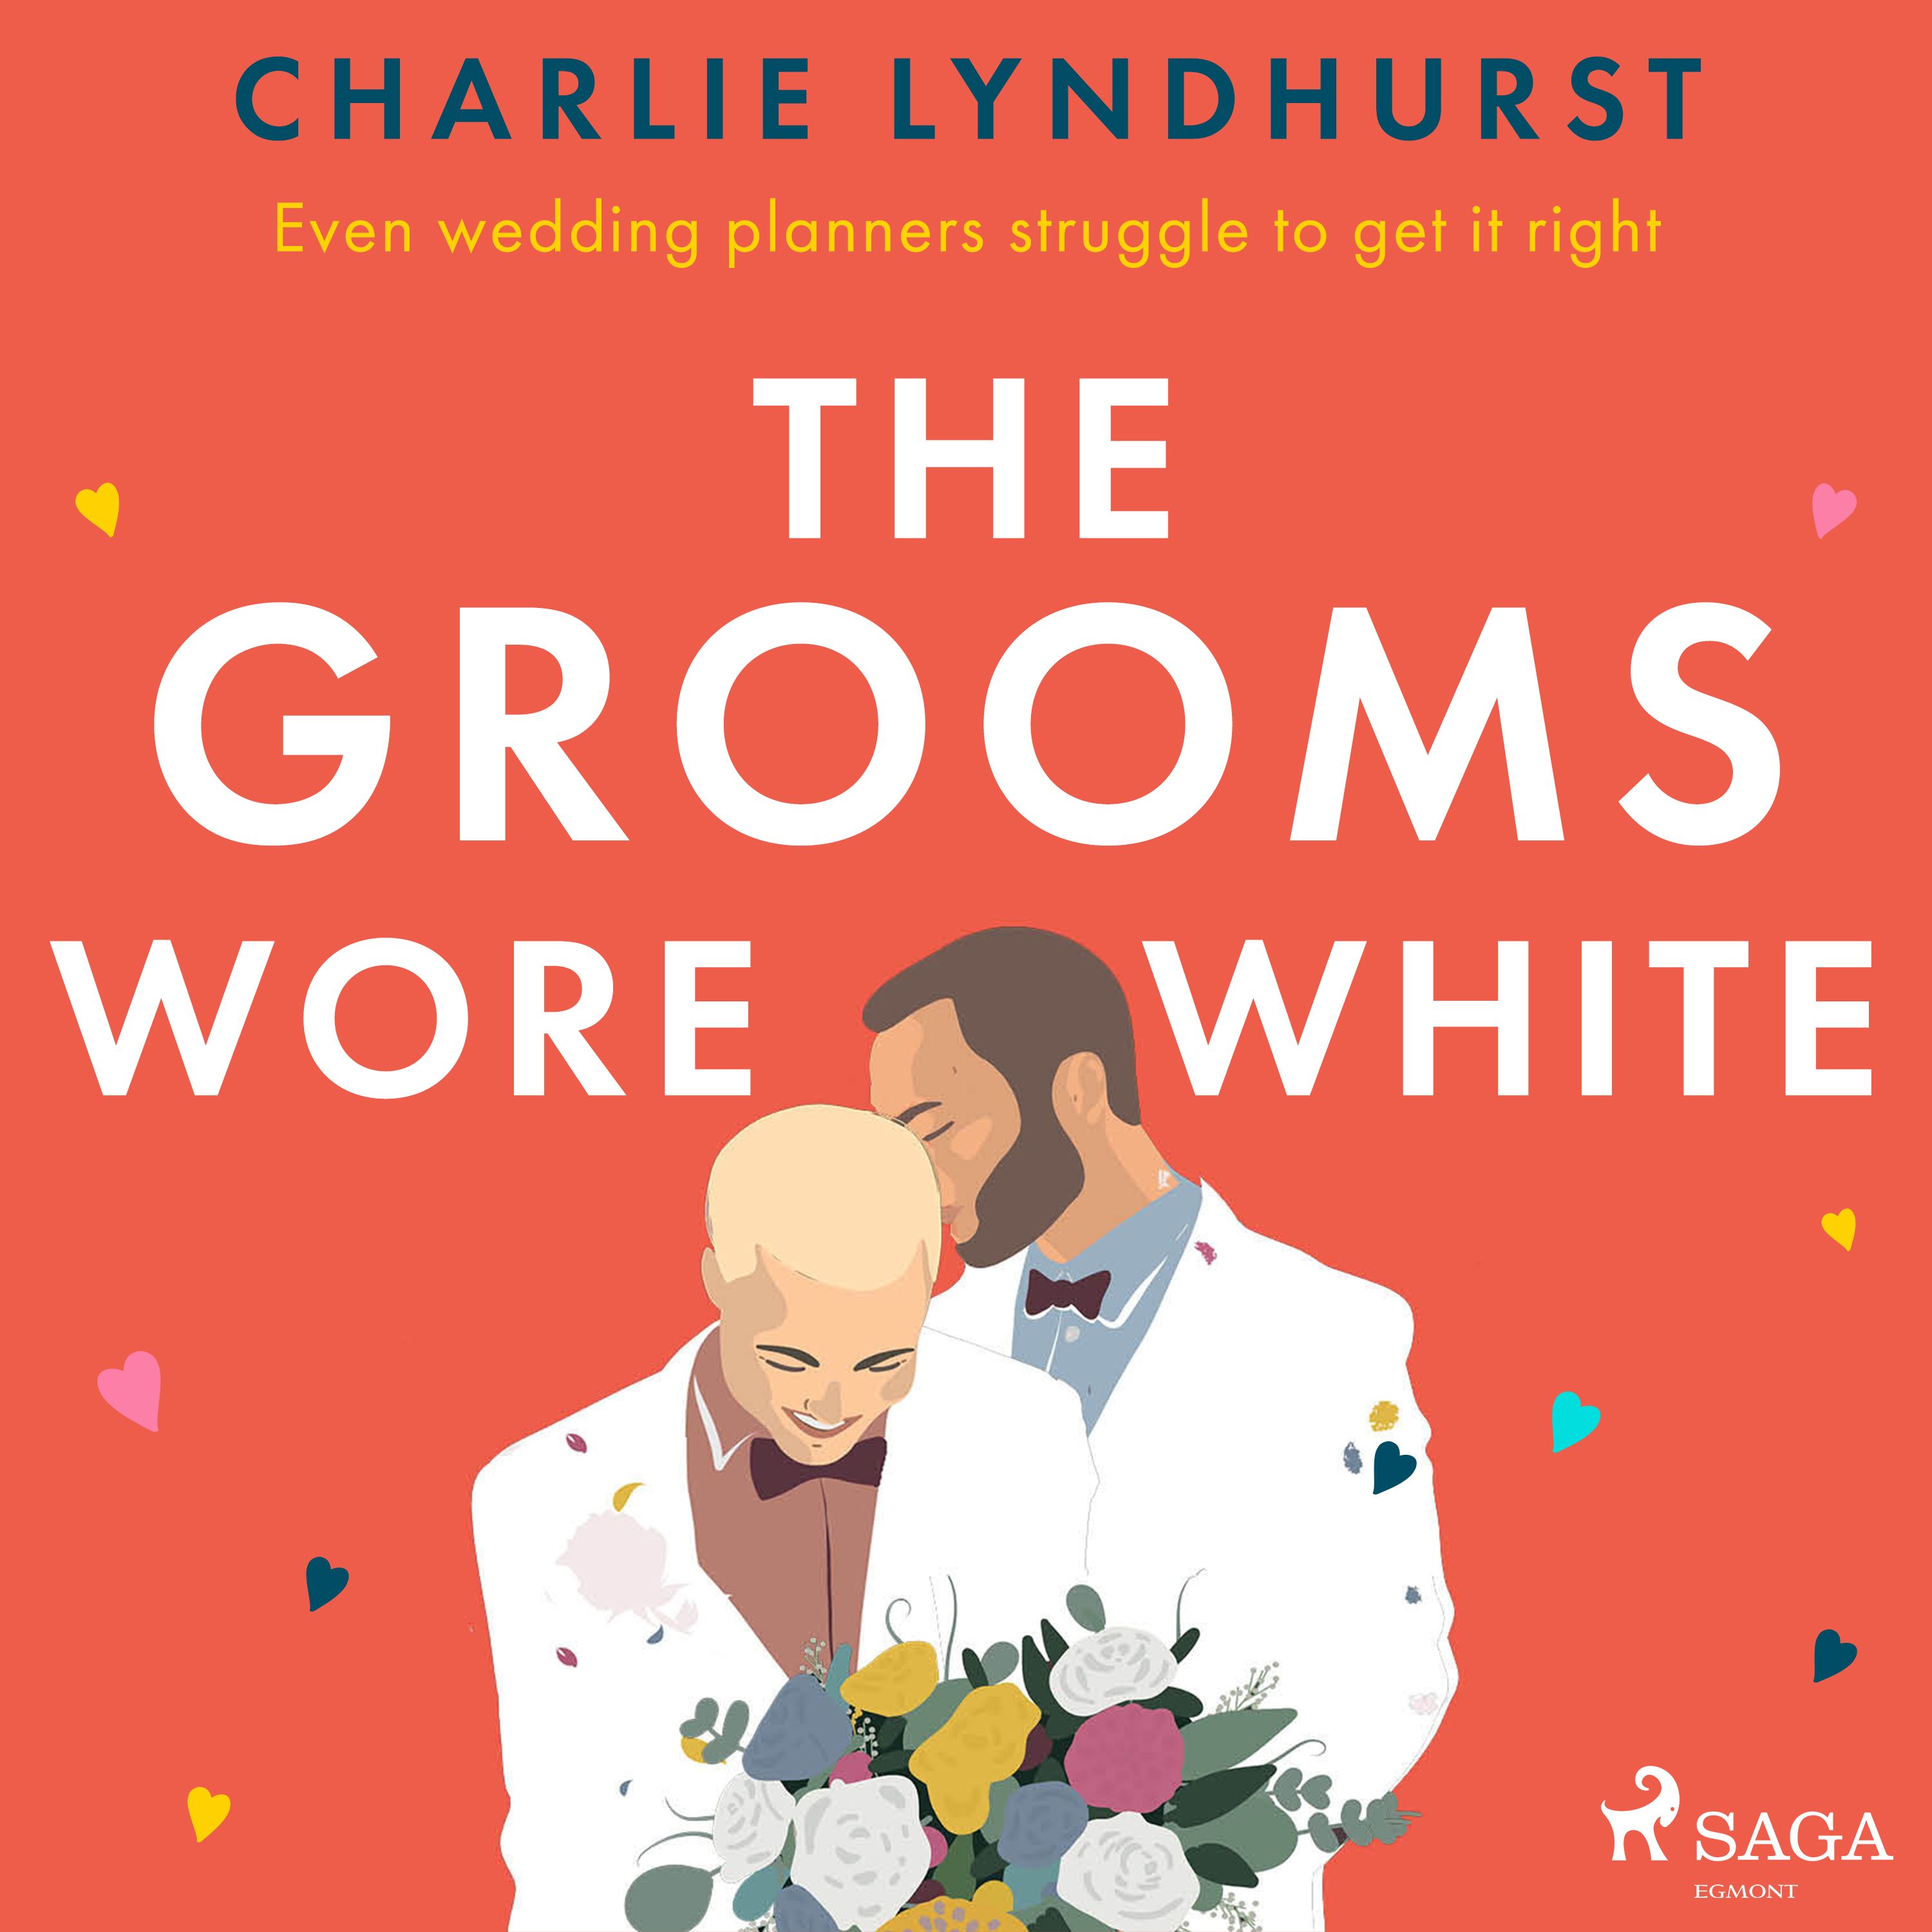 The Grooms Wore White, ljudbok av Charlie Lyndhurst